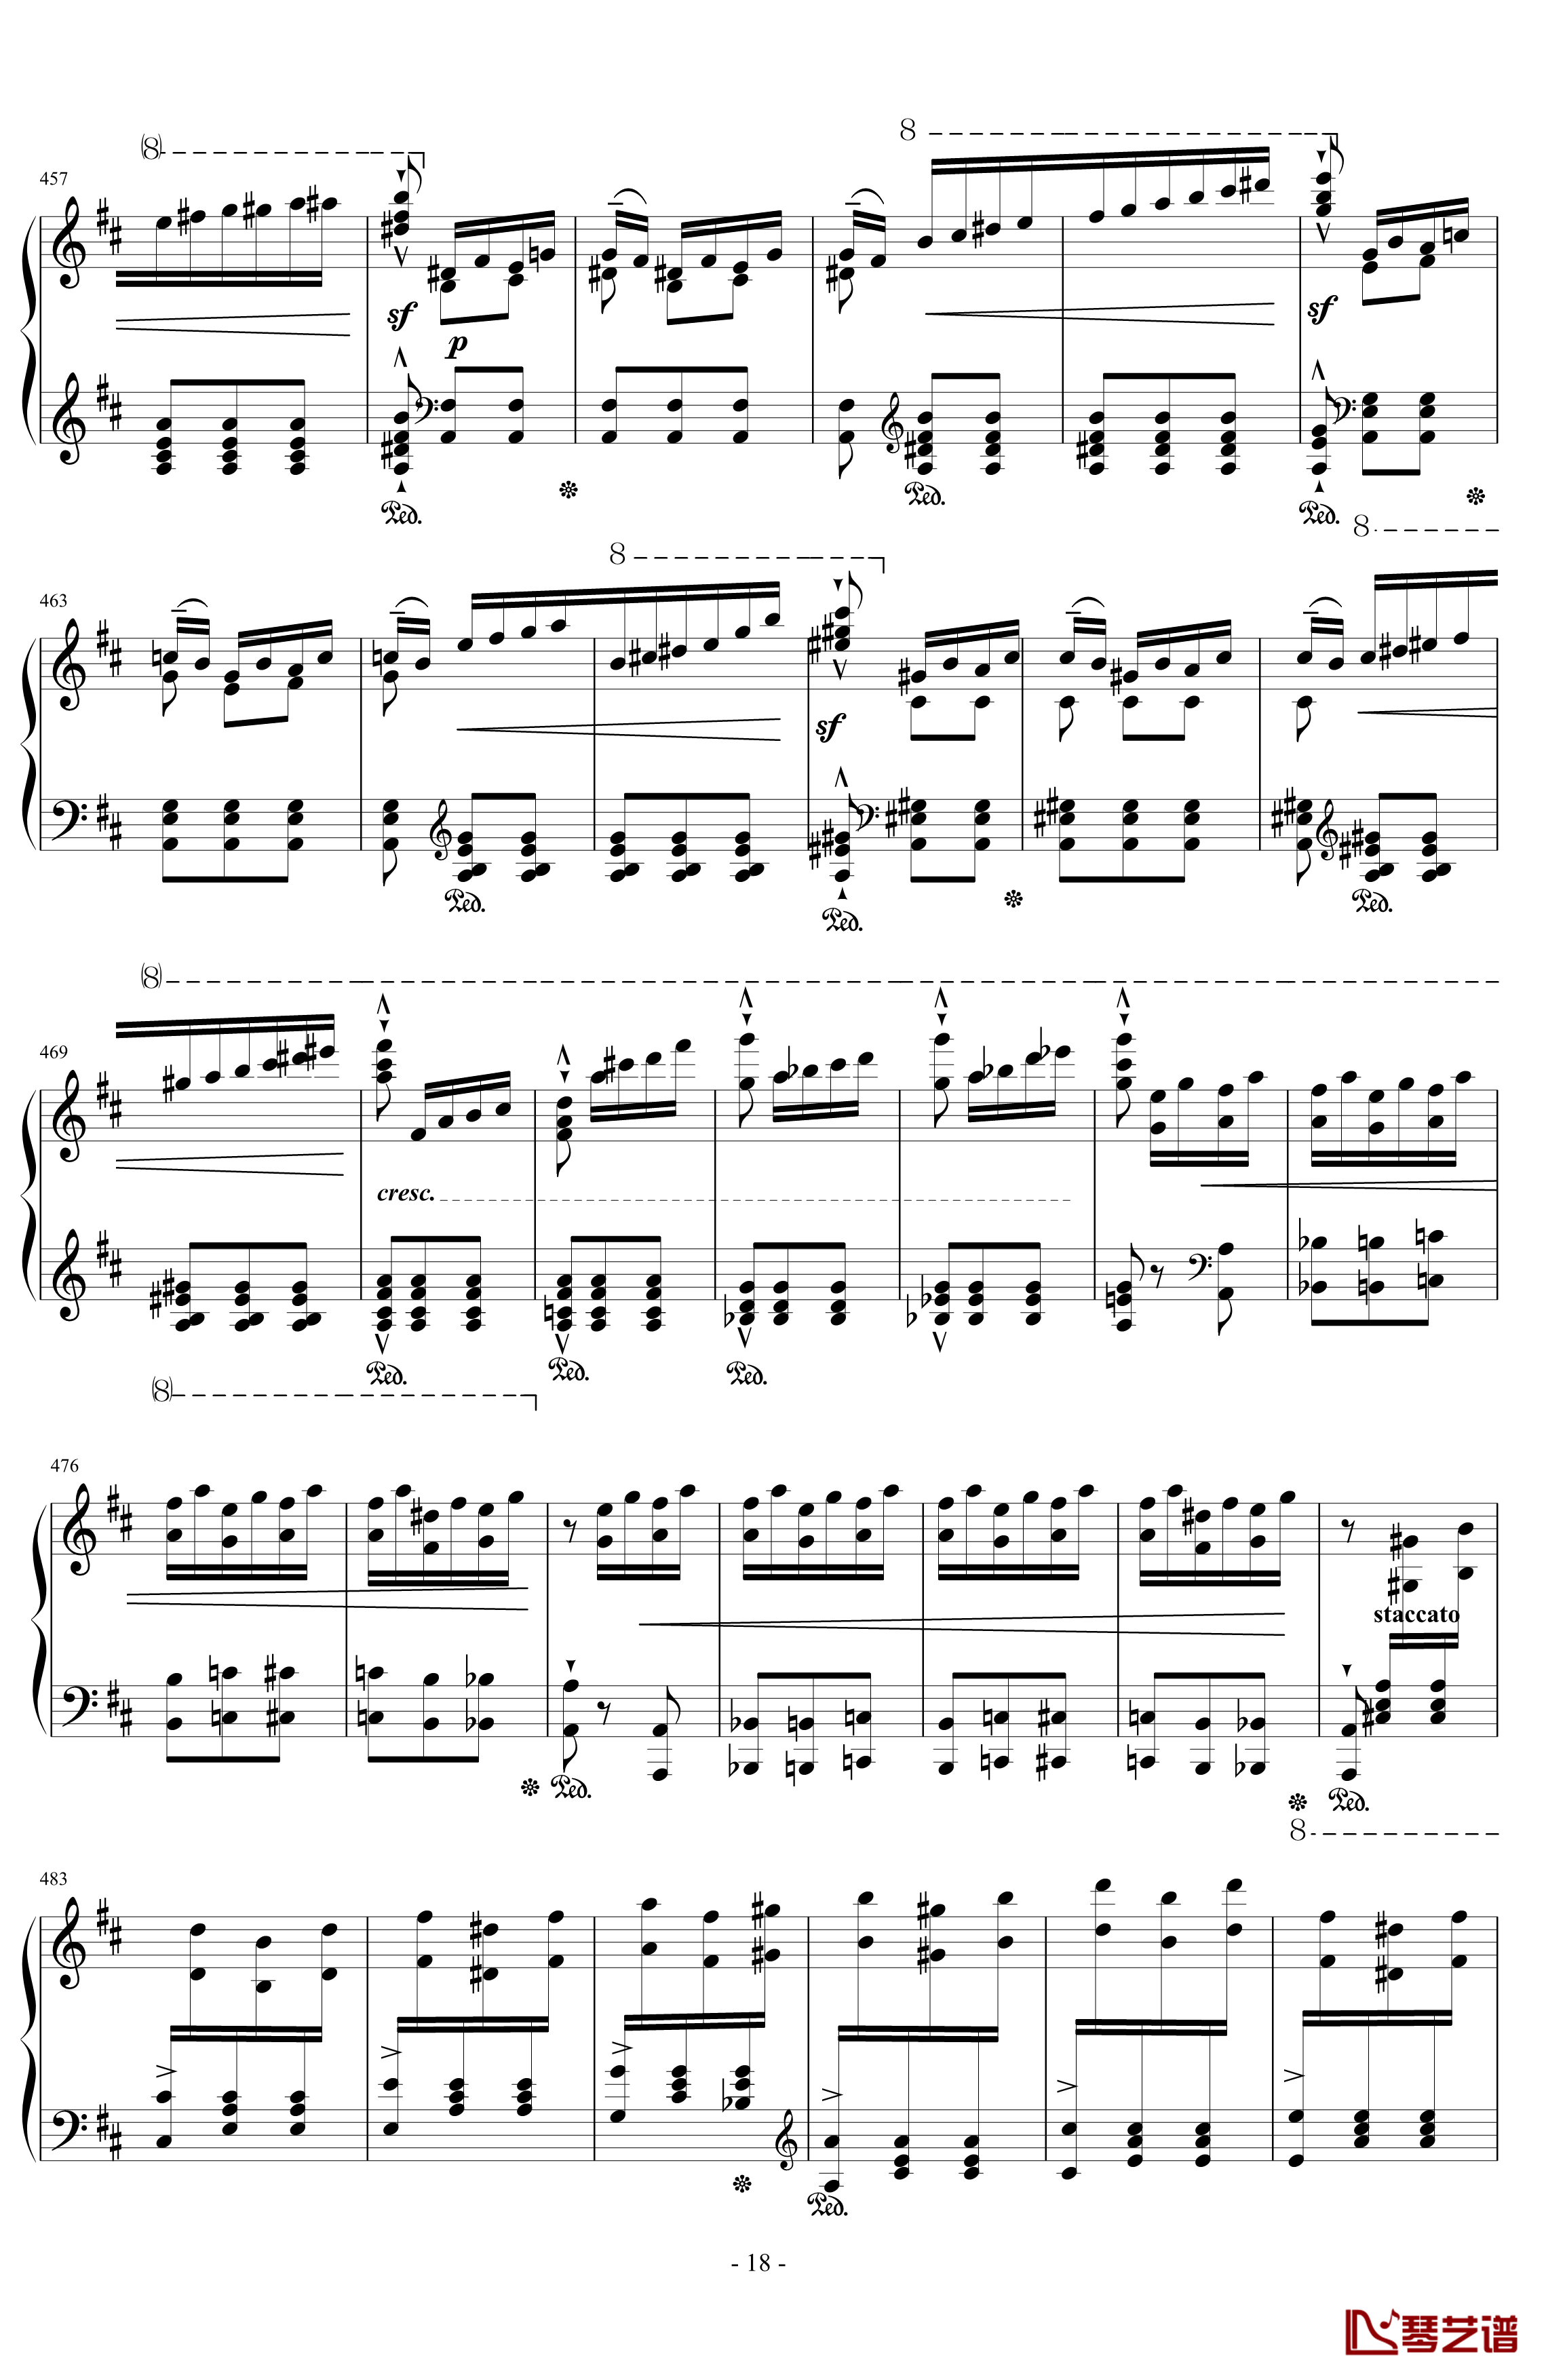 西班牙狂想曲钢琴谱-难度极高的炫技大作-李斯特18